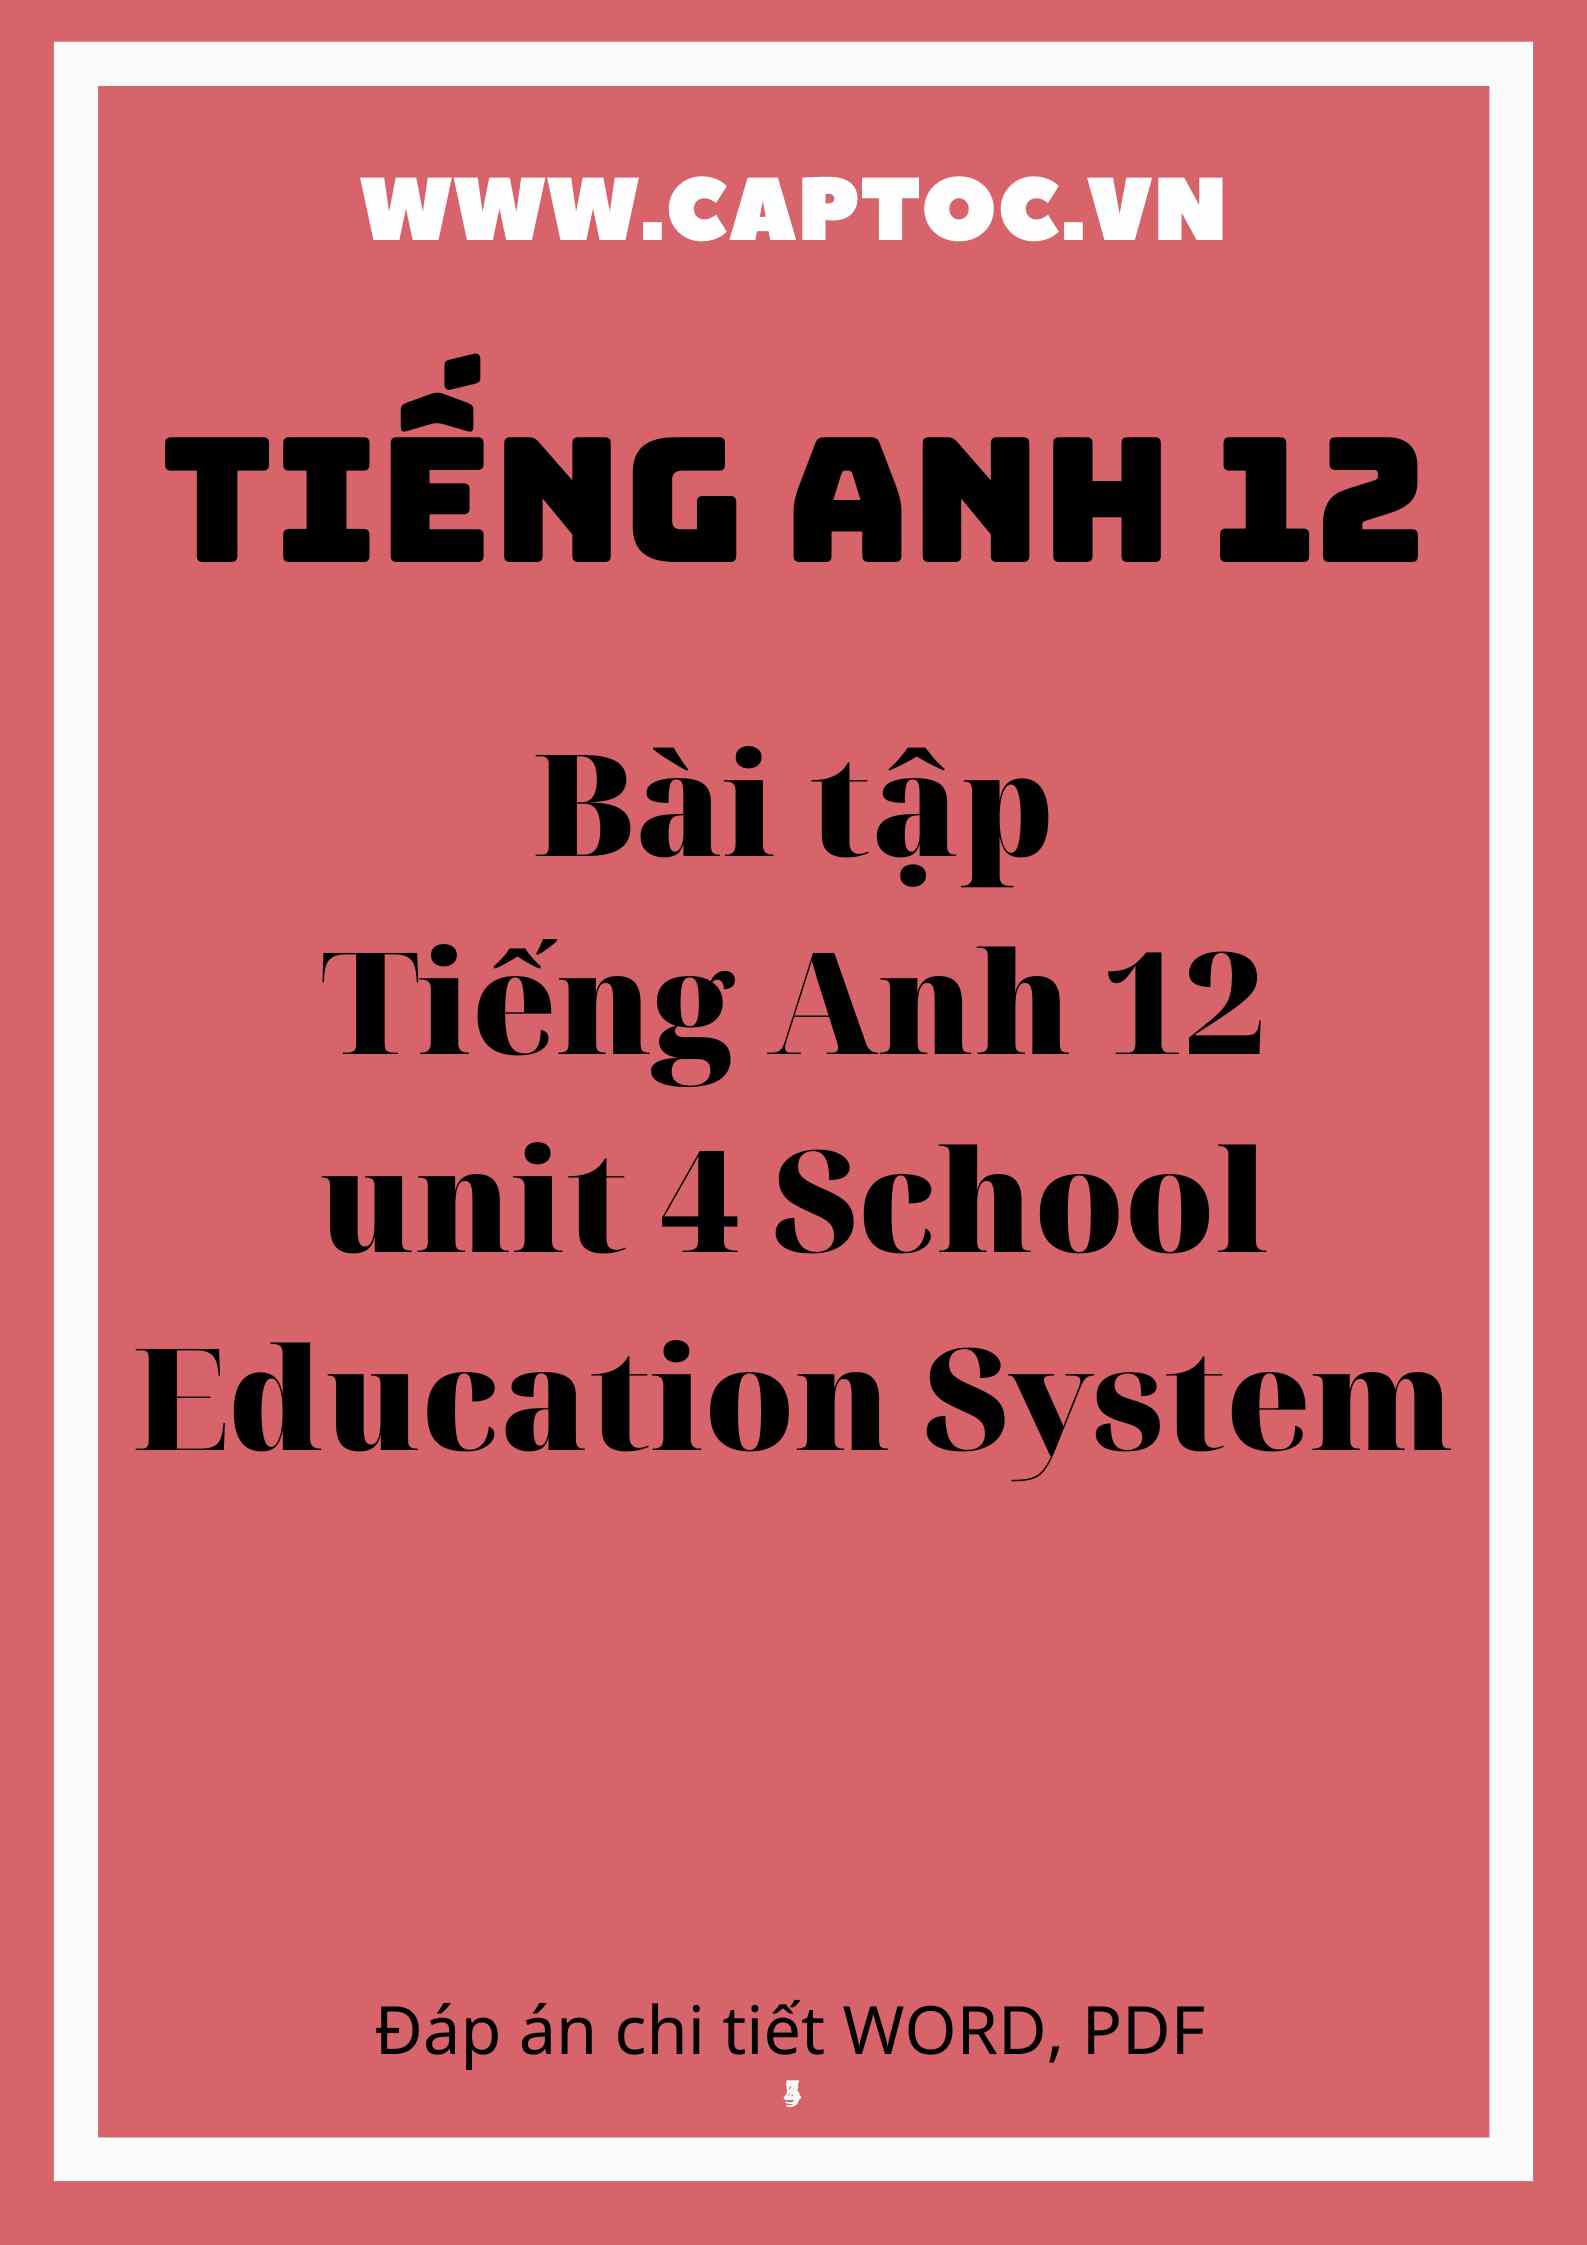 Bài tập Tiếng Anh 12 unit 4 School Education System